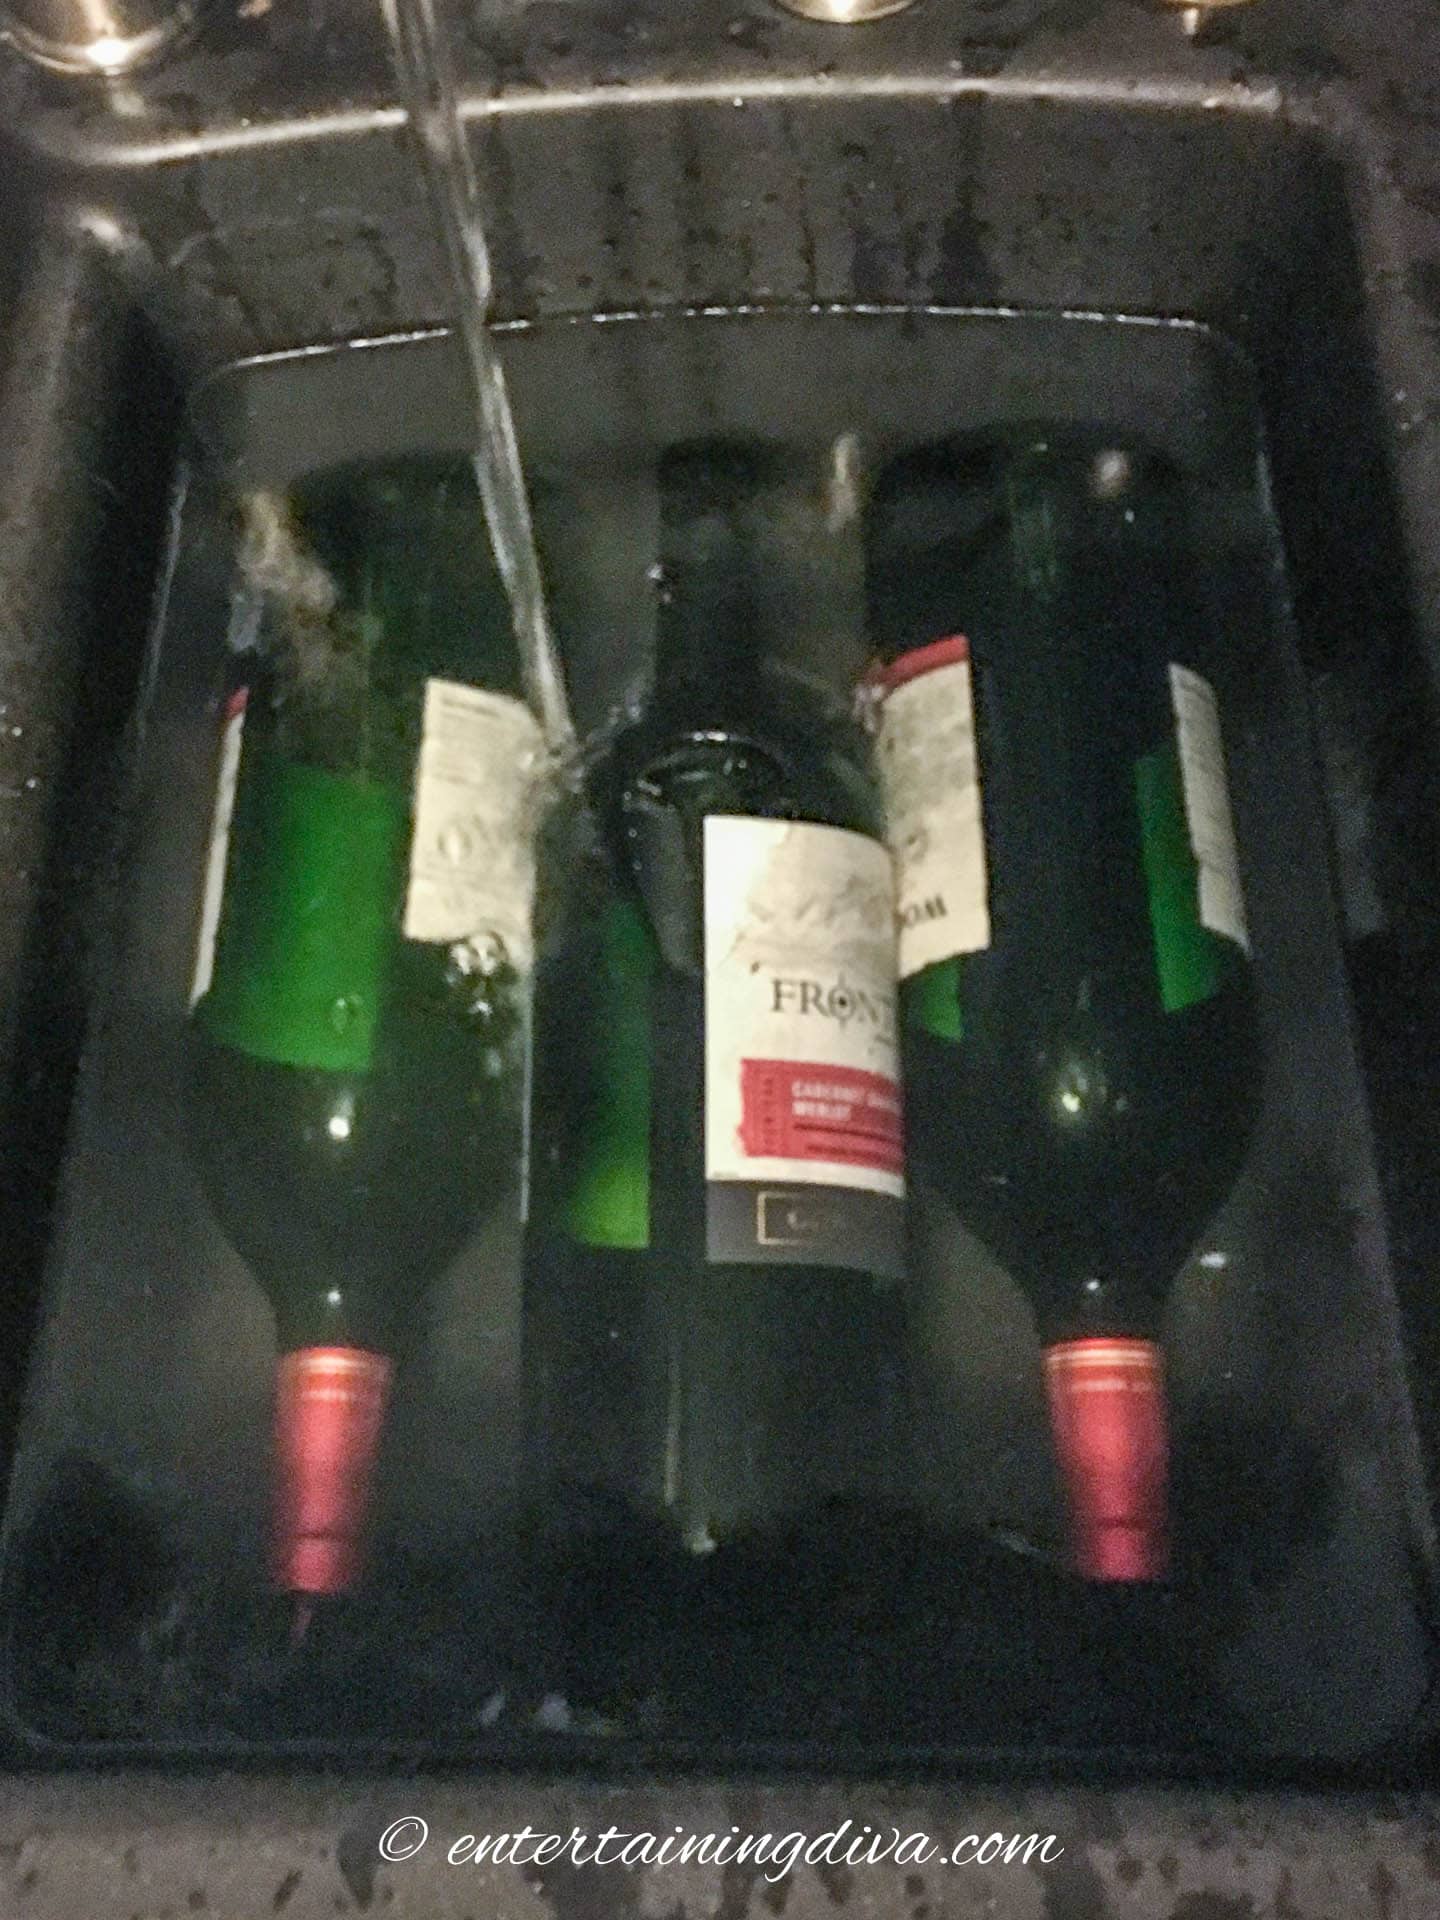 wine bottles soaking in water in a sink